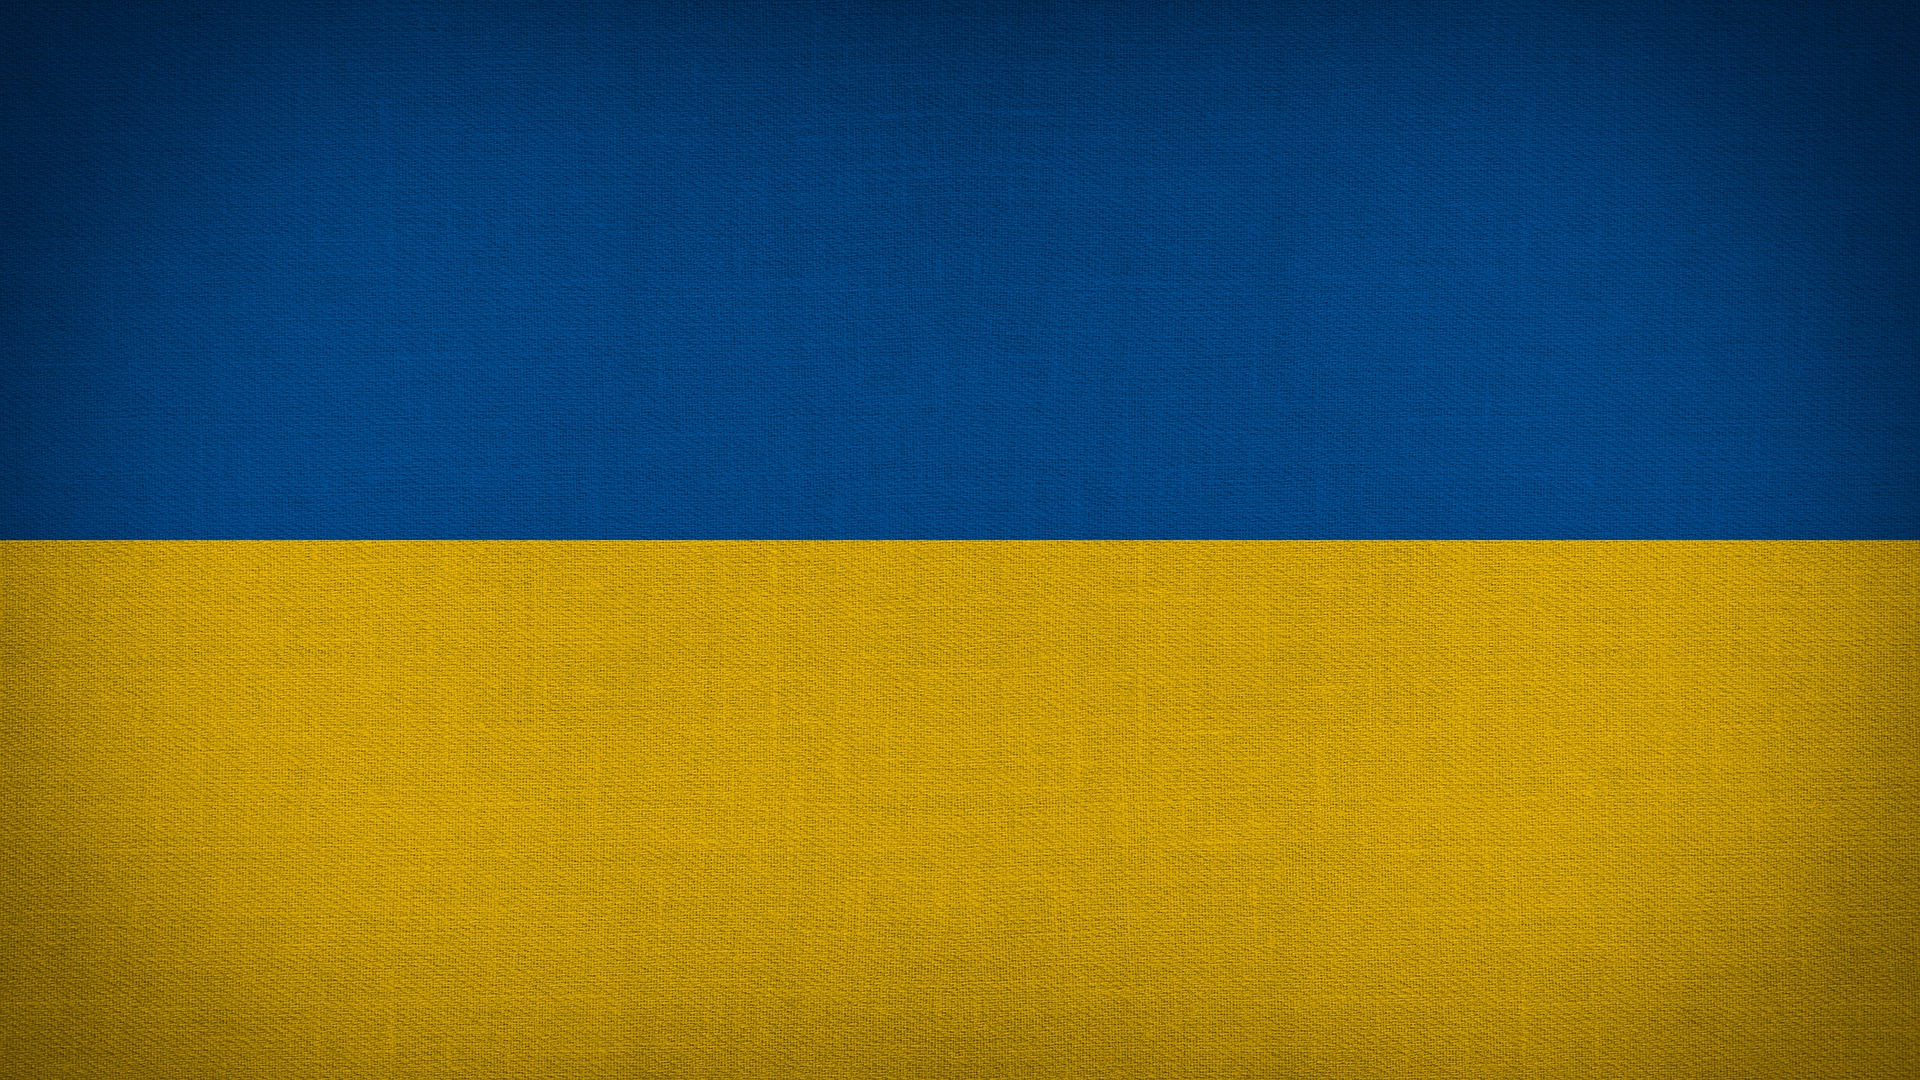 ZASADY PRZYJĘCIA DO PRACY OBYWATELA UKRAINY